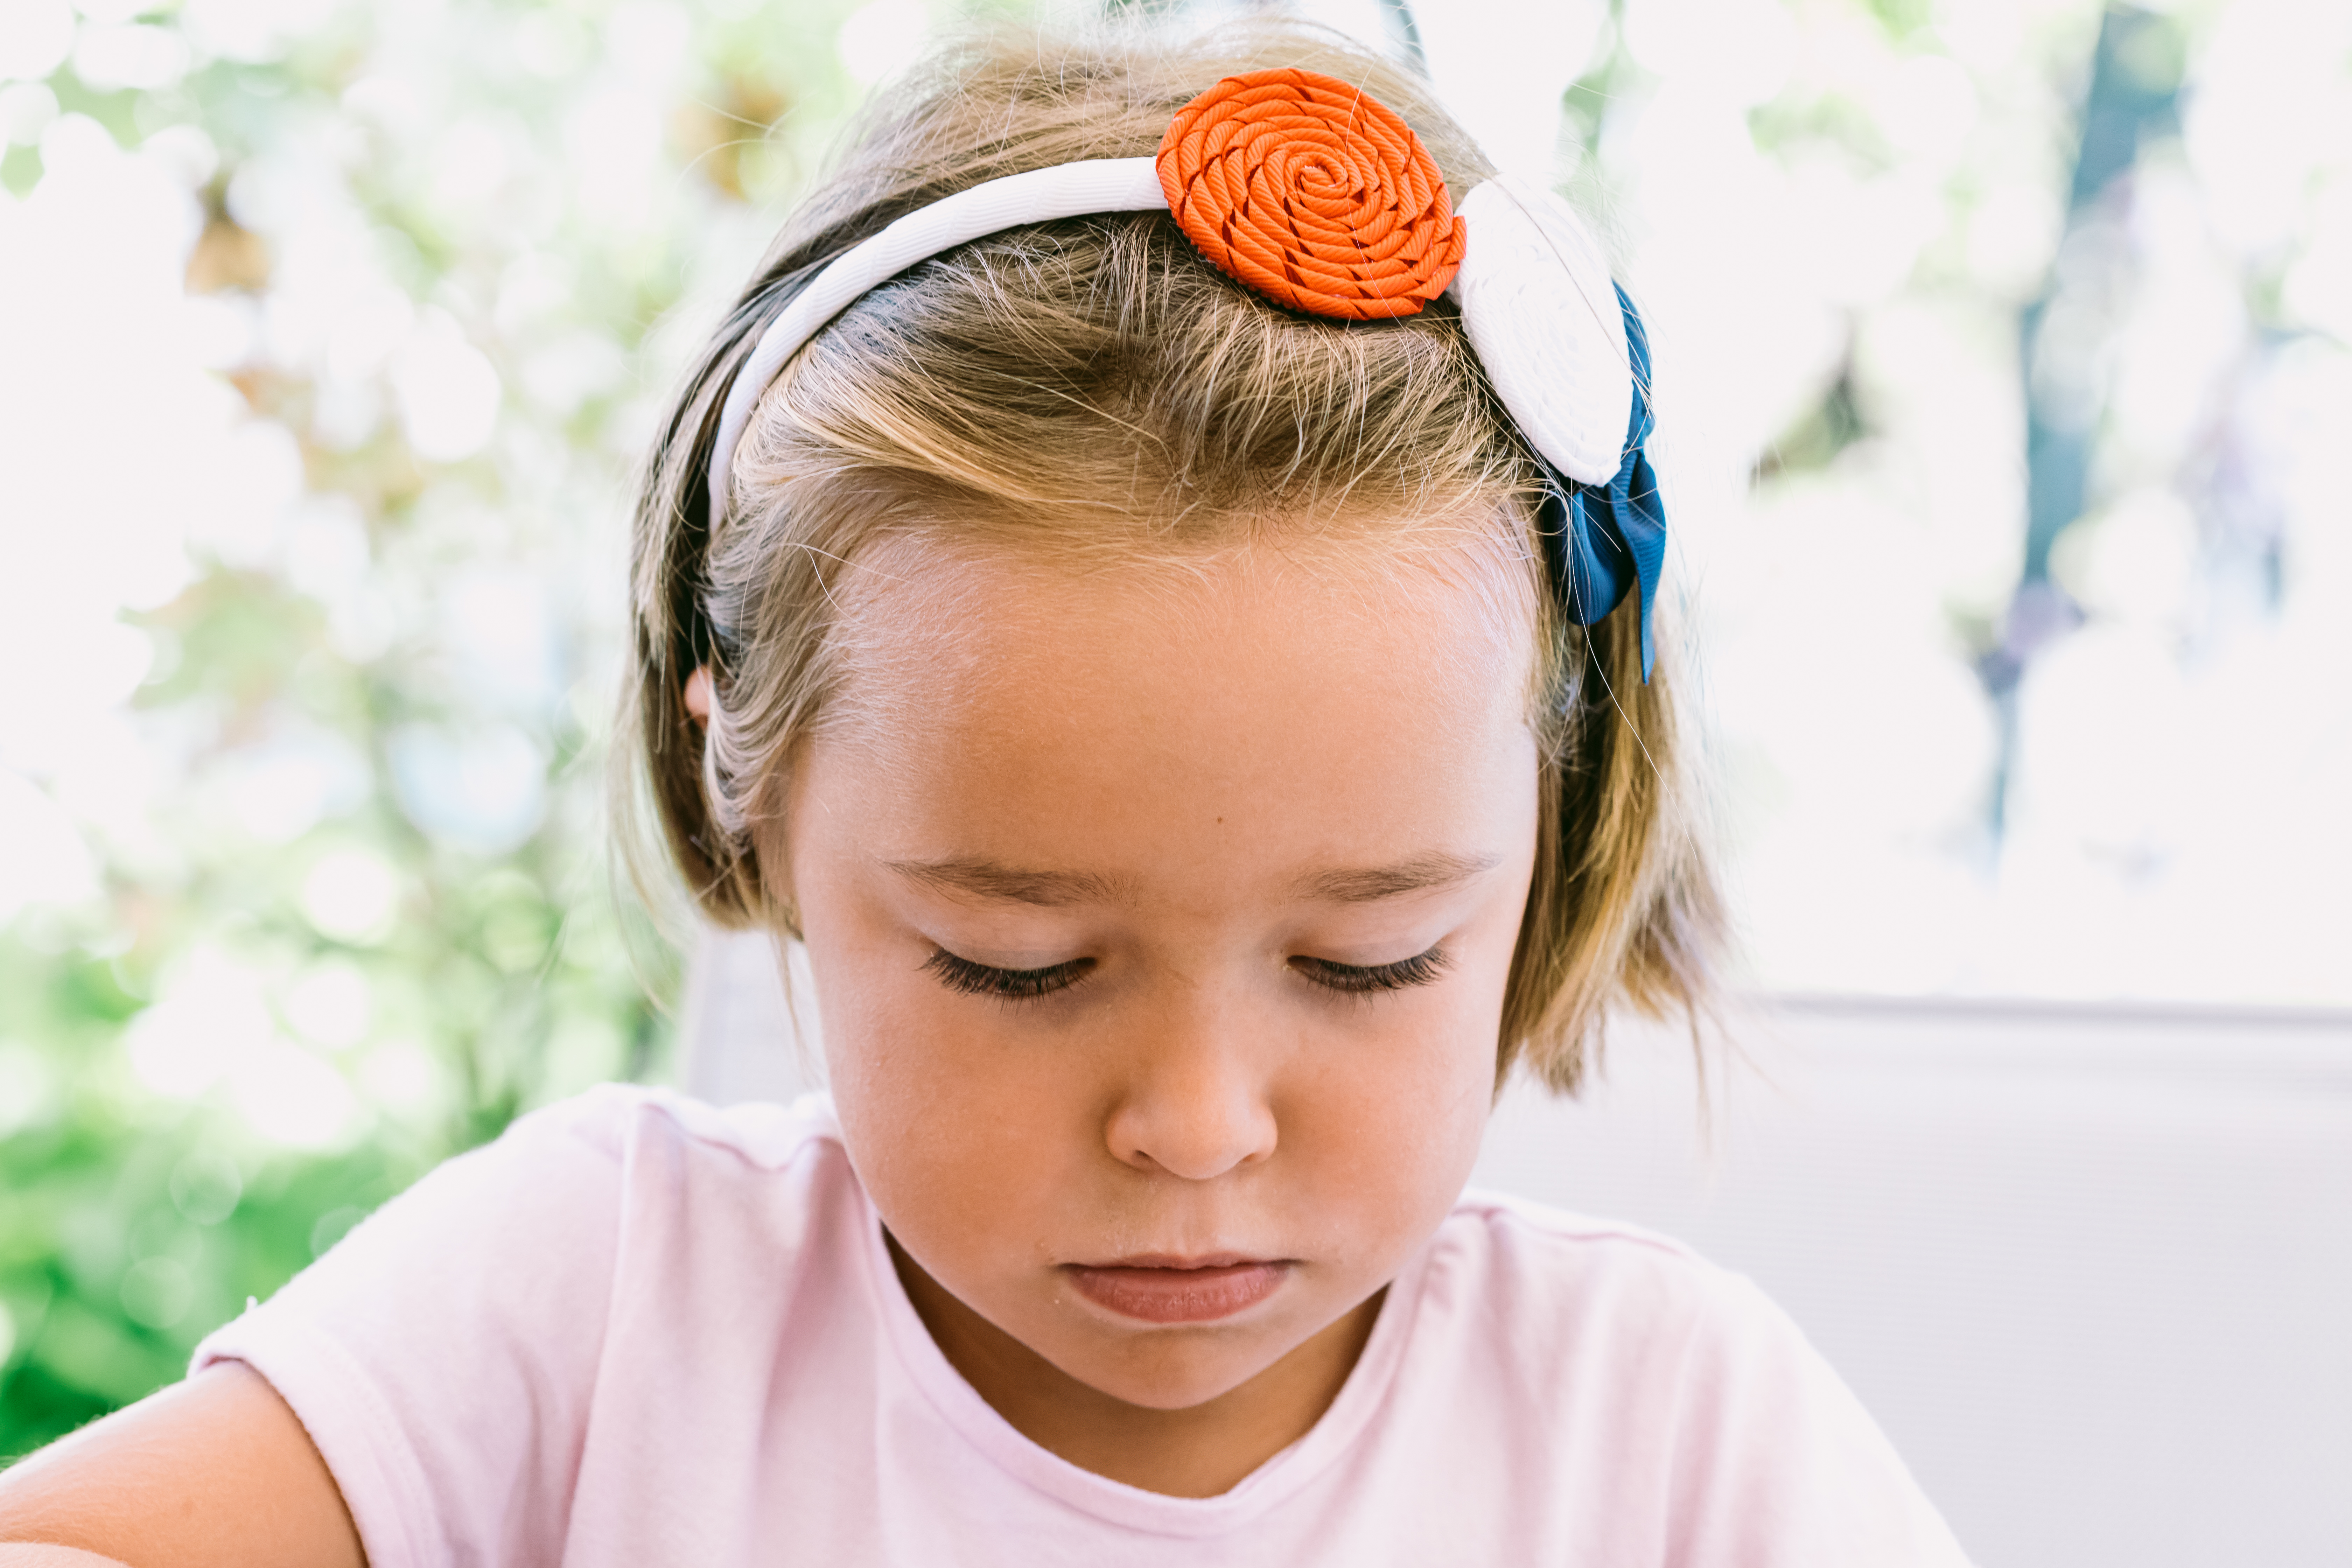 Portrait d'une petite fille sérieuse aux cheveux blonds, portant un bandeau blanc avec des décorations bleues, rouges et blanches, avec un jardin en arrière-plan | Source : Getty Images